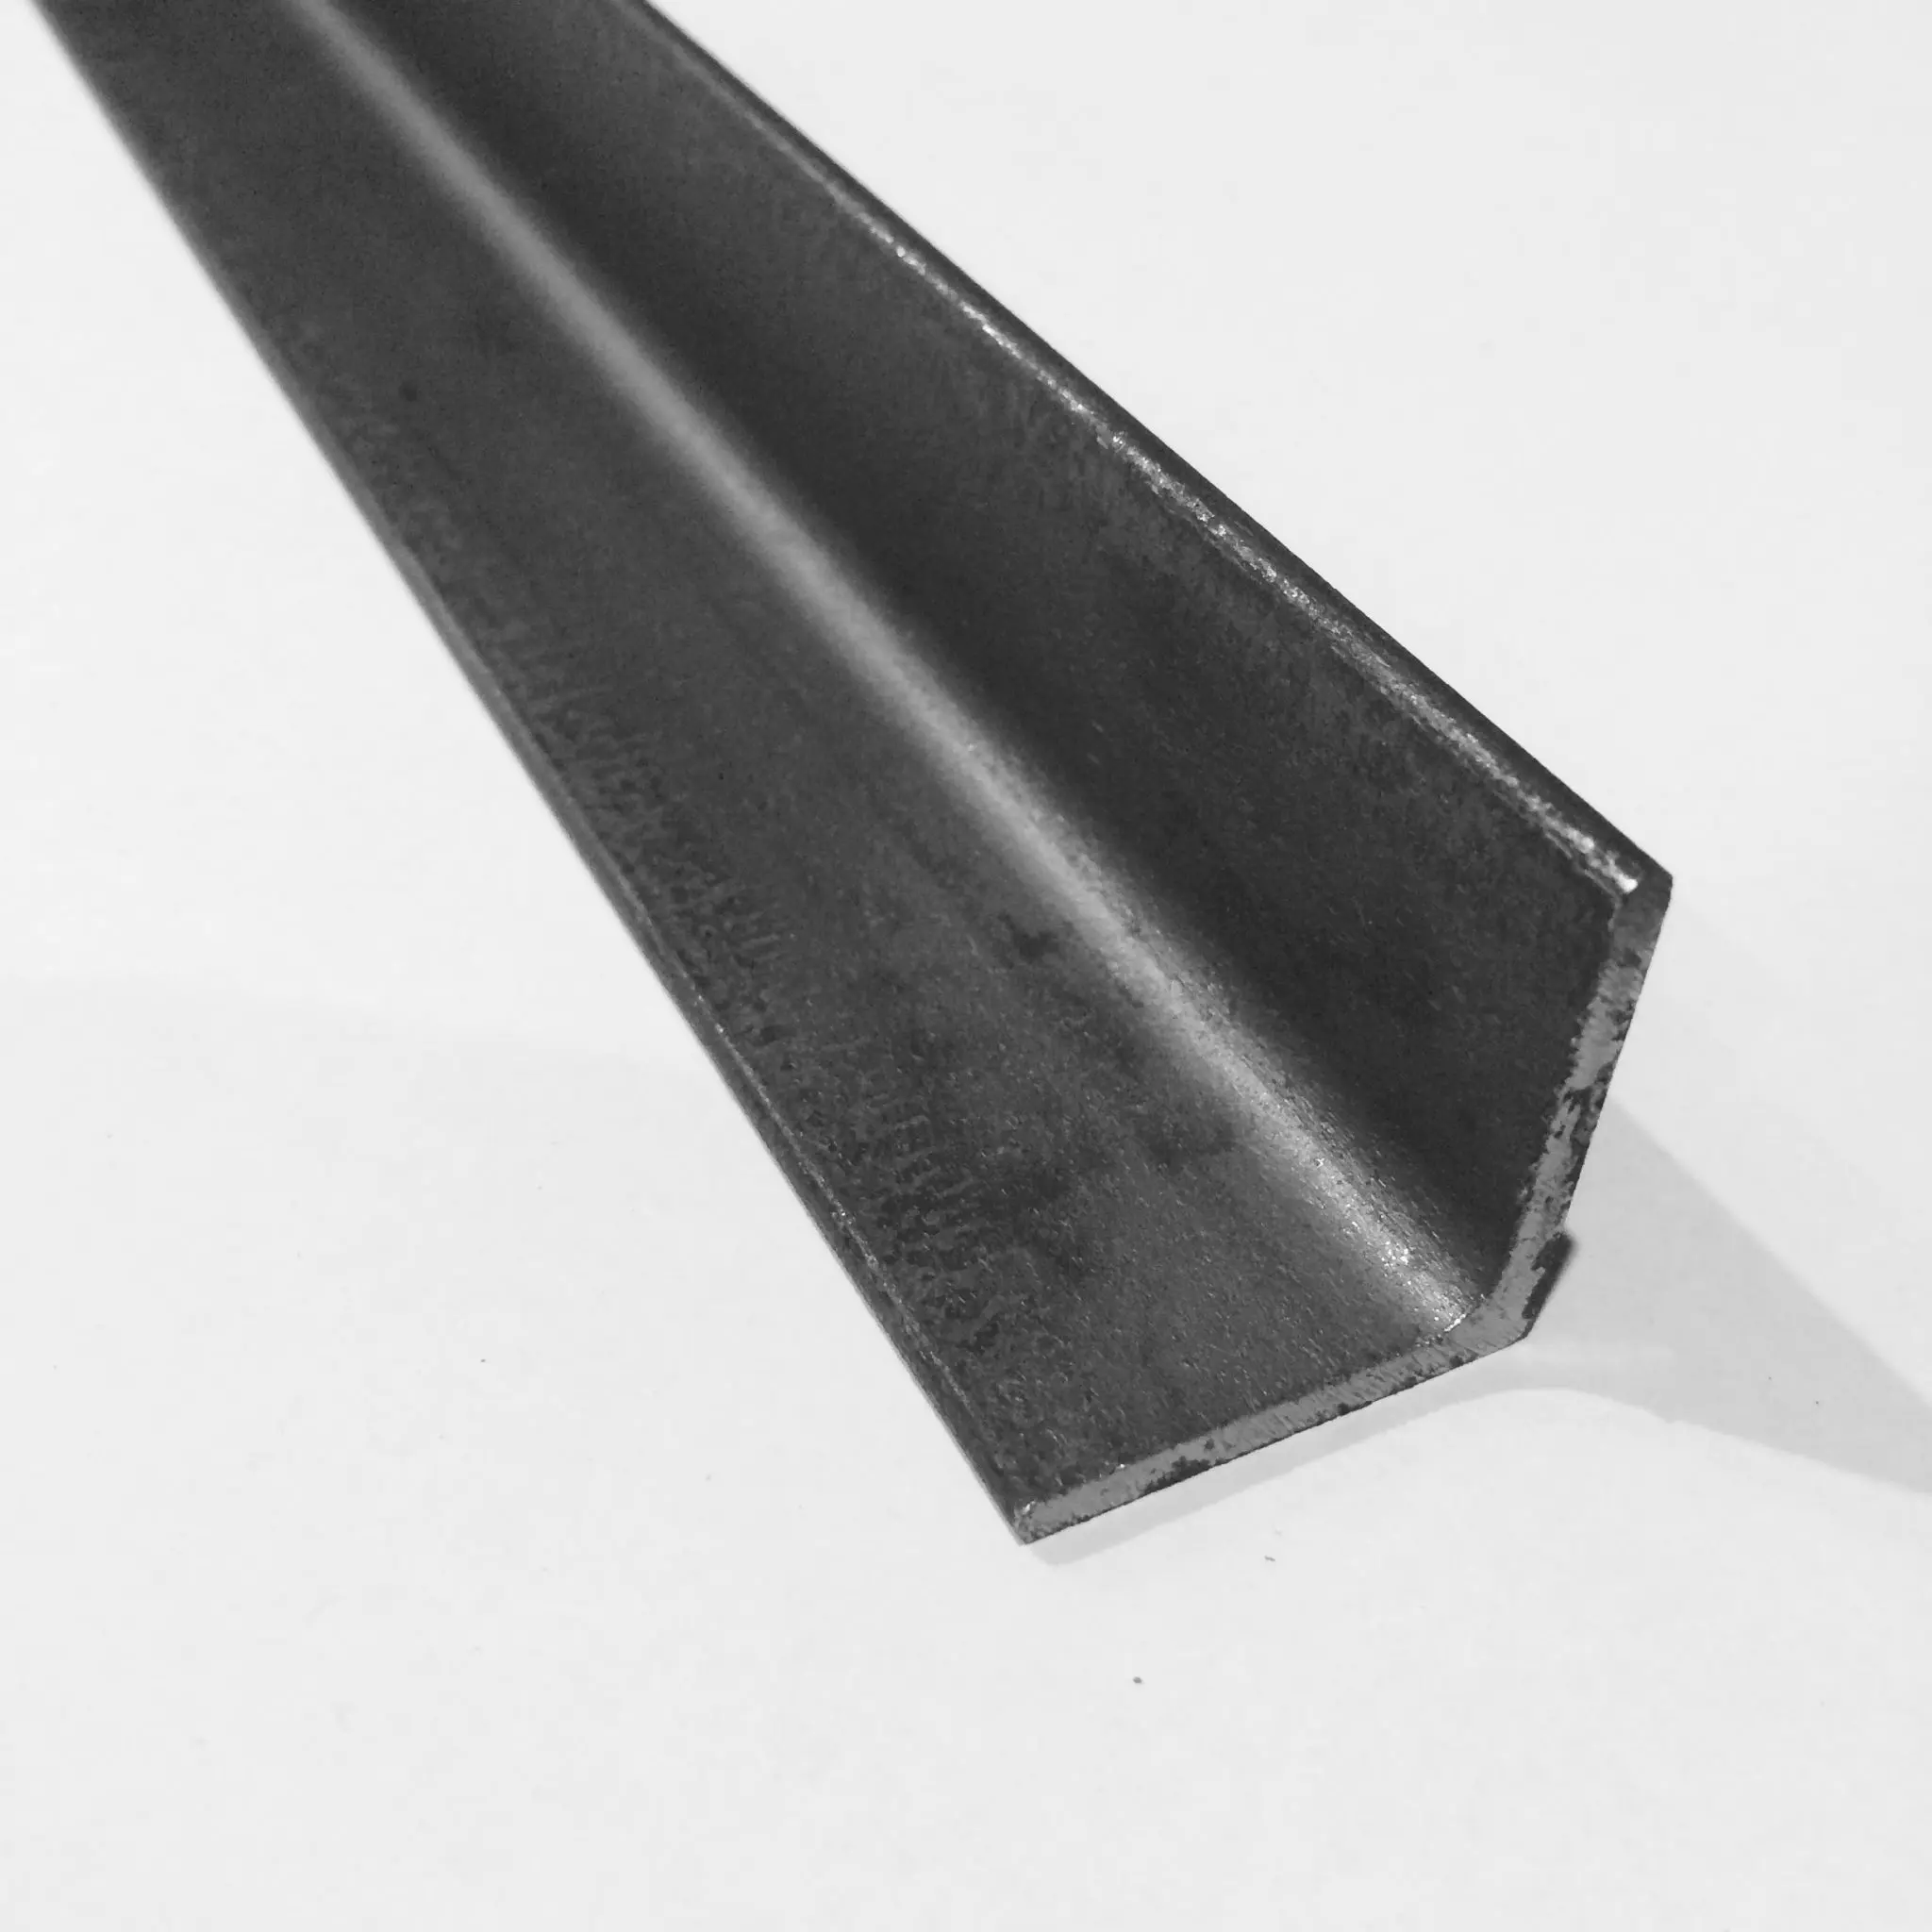 Construction d'angle en acier doux laminé à chaud de haute qualité barre d'ange égale en carbone structurel/angle en acier/angle de fer